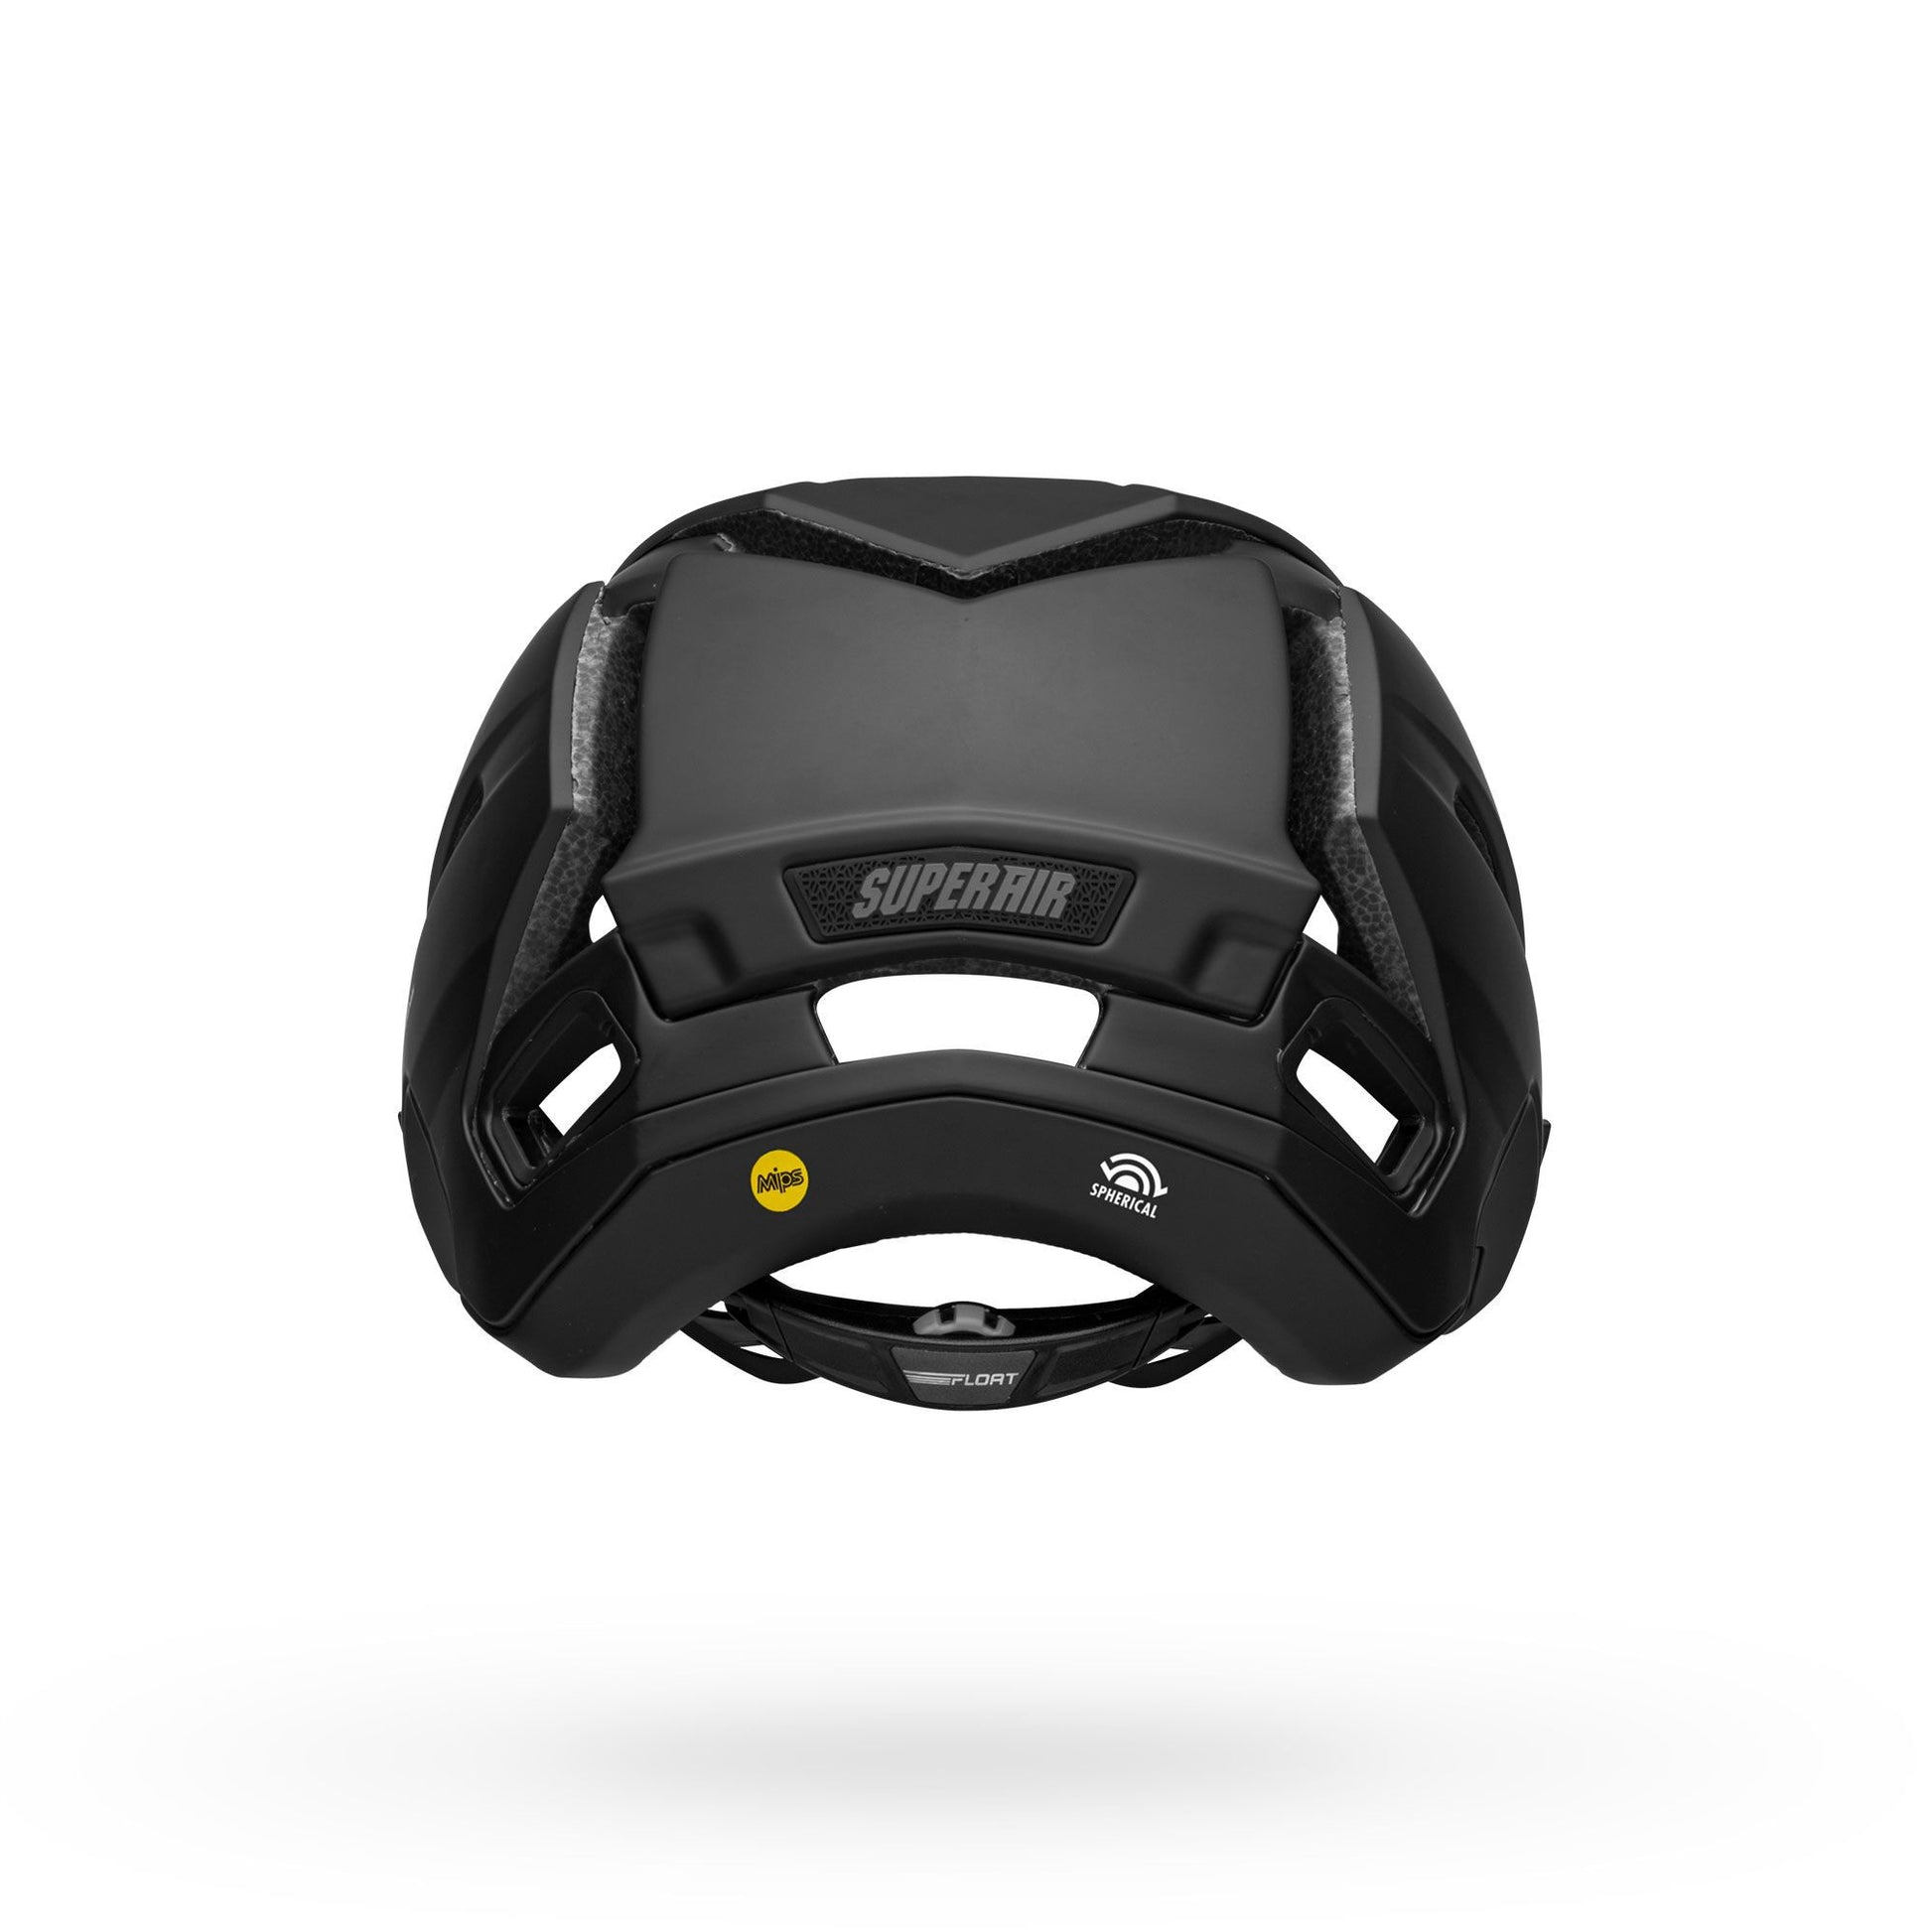 Bell Super Air Spherical Helmet Matte/Gloss Black Bike Helmets